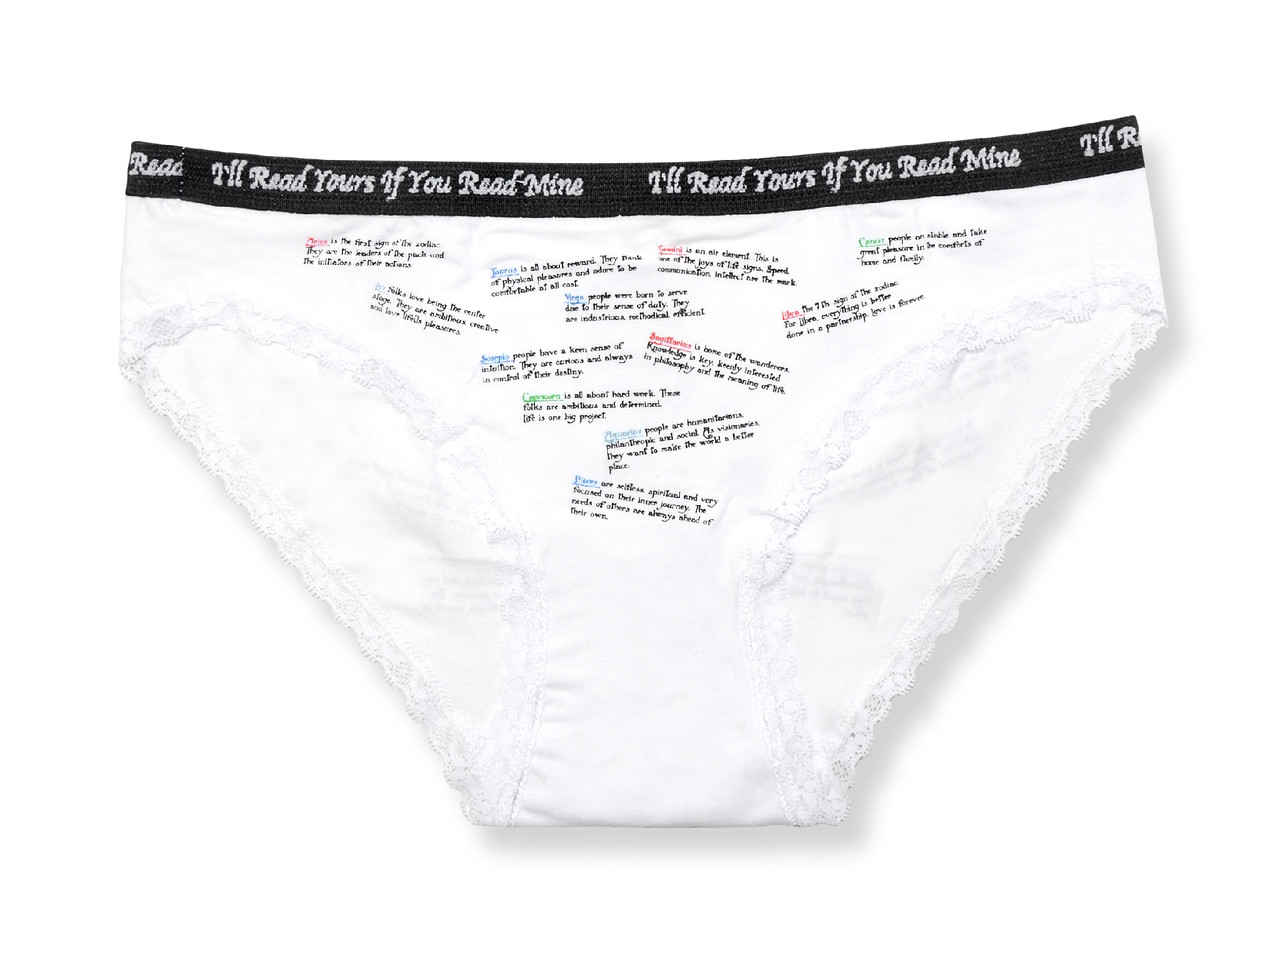 ICON Brief, ThePack Underwear